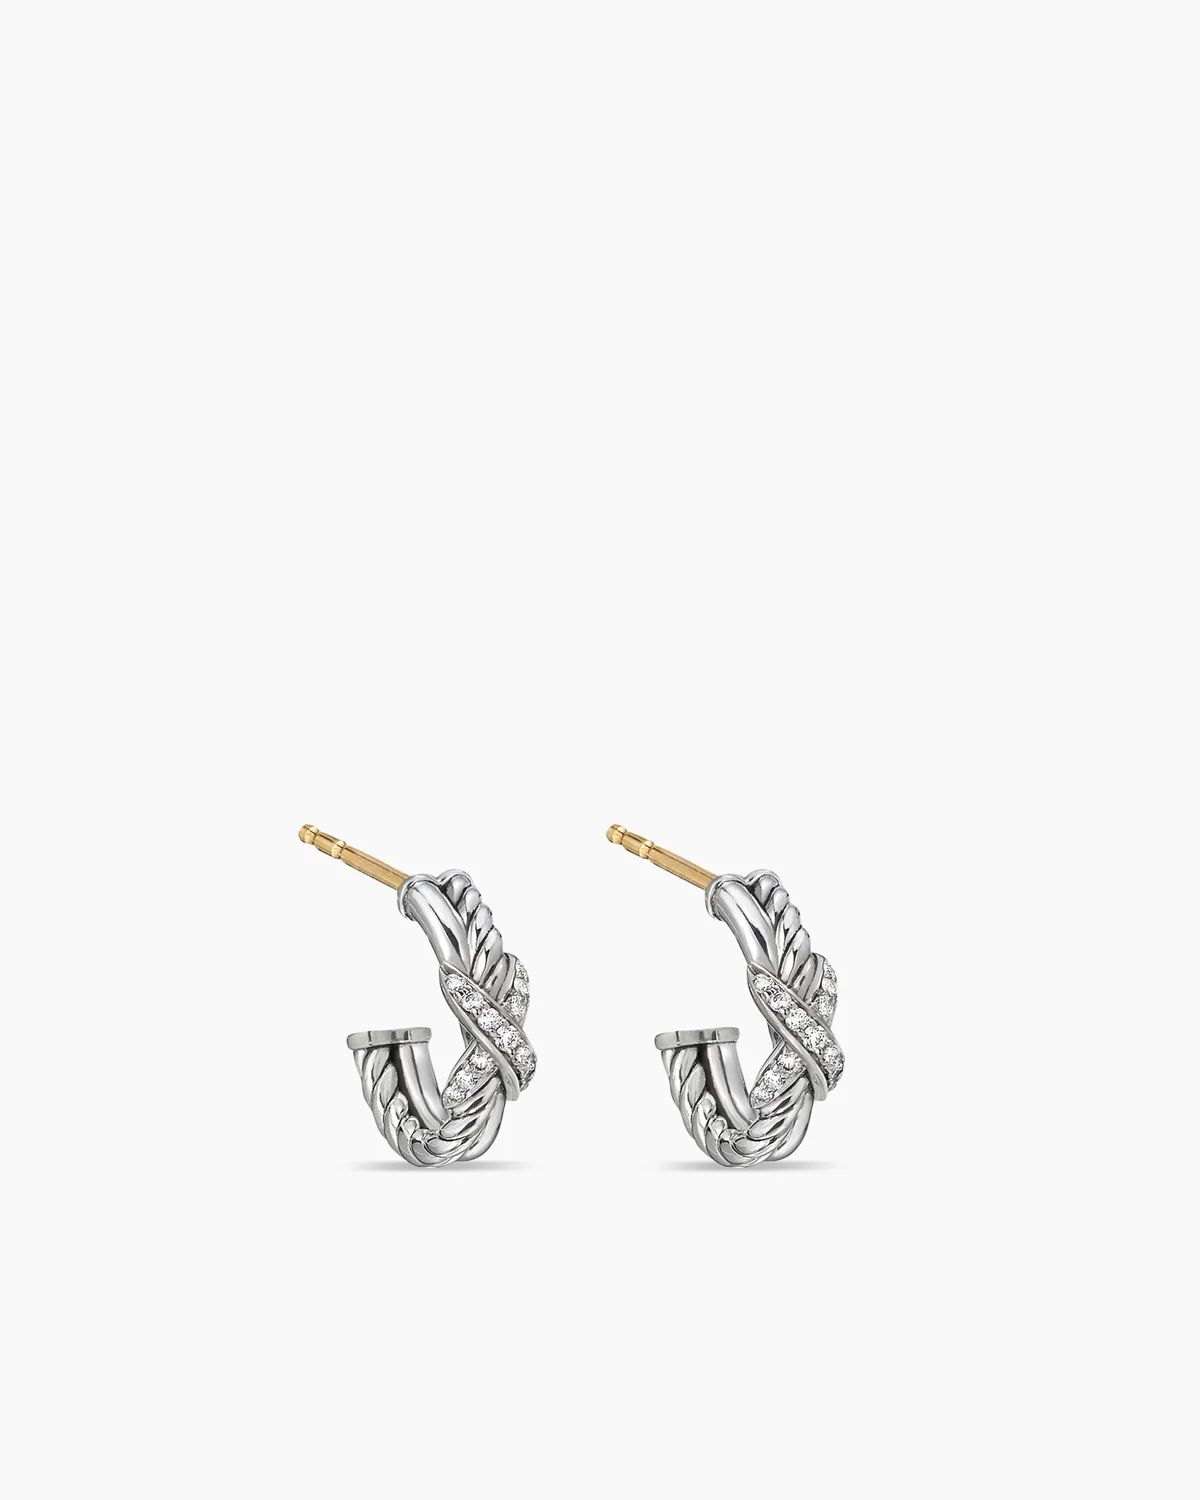 Petite X Hoop Earrings | David Yurman